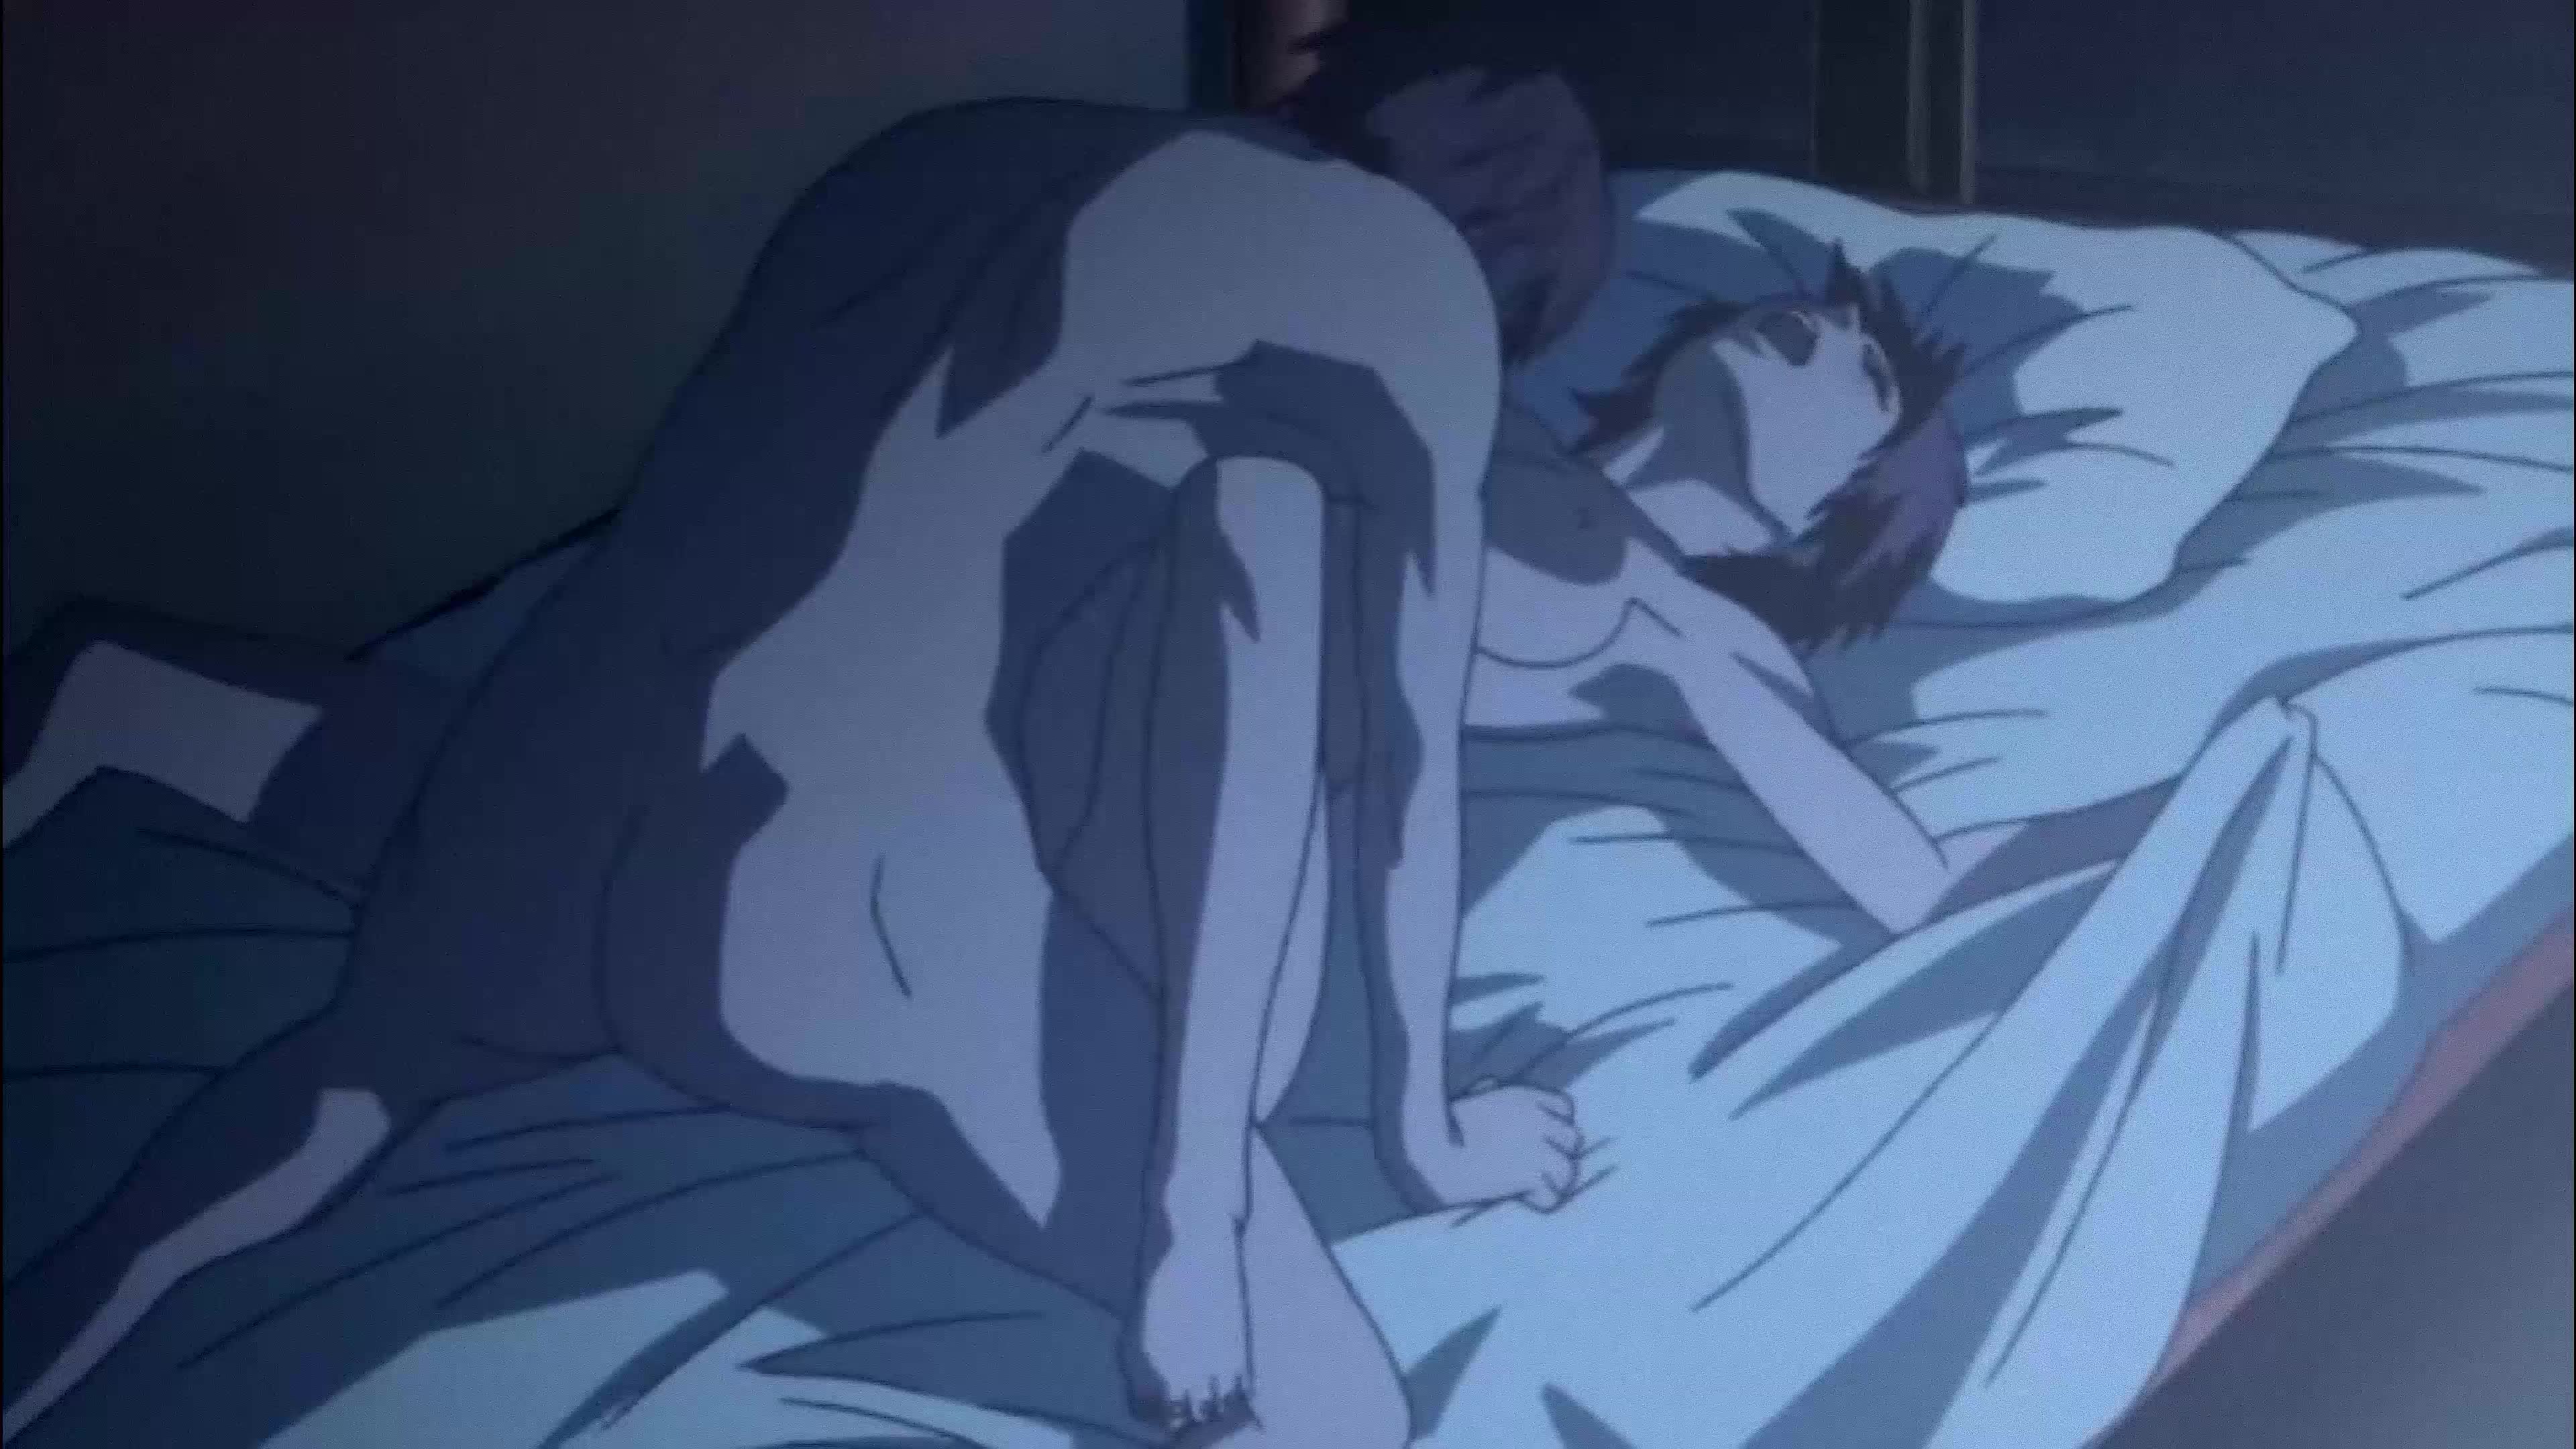 Sex scenes in anime